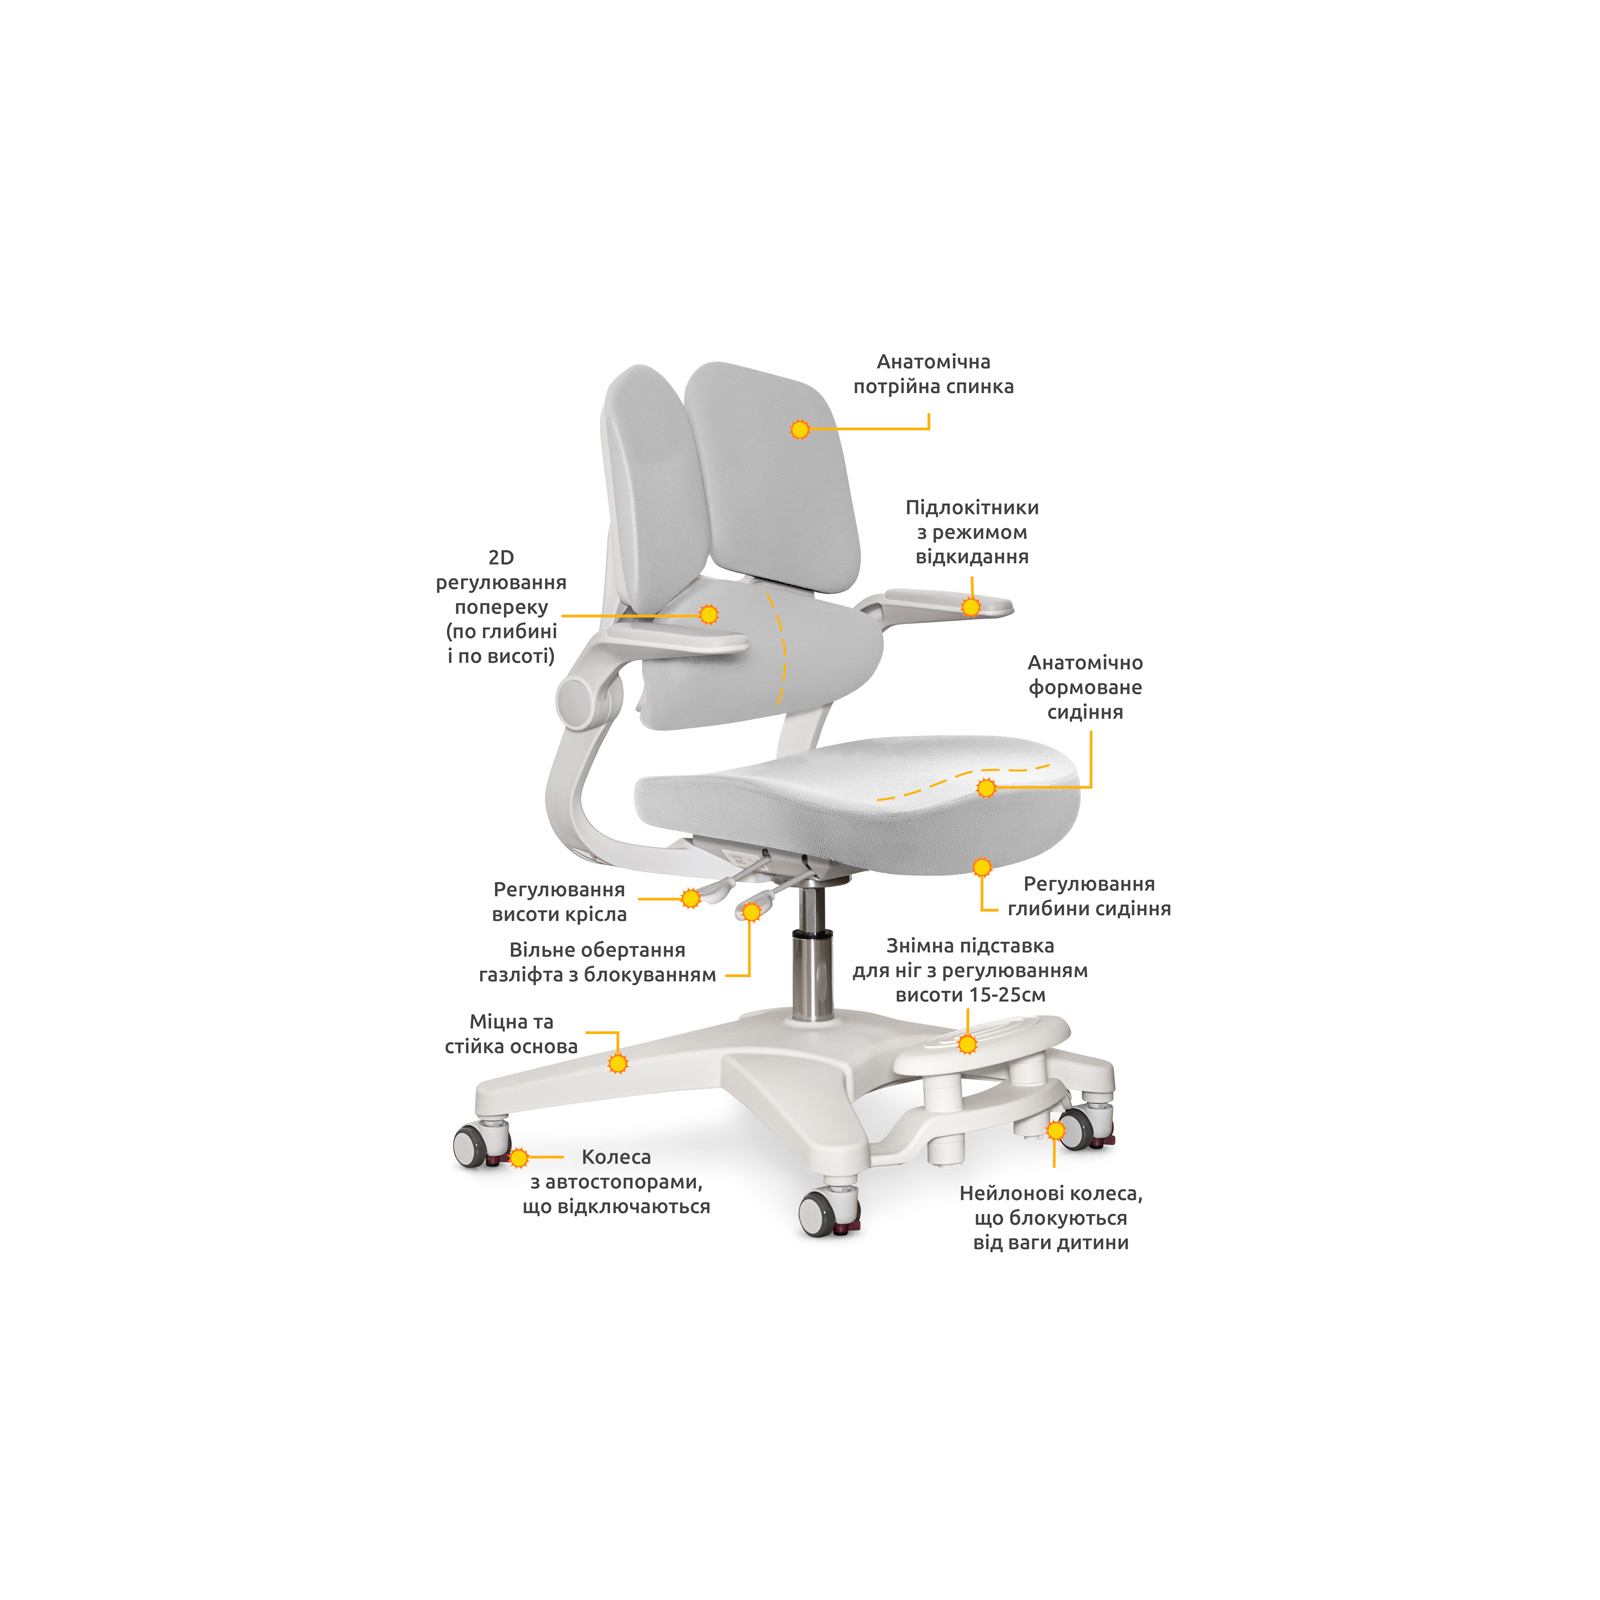 Детское кресло Mealux Trident Grey (Y-617 G) изображение 2